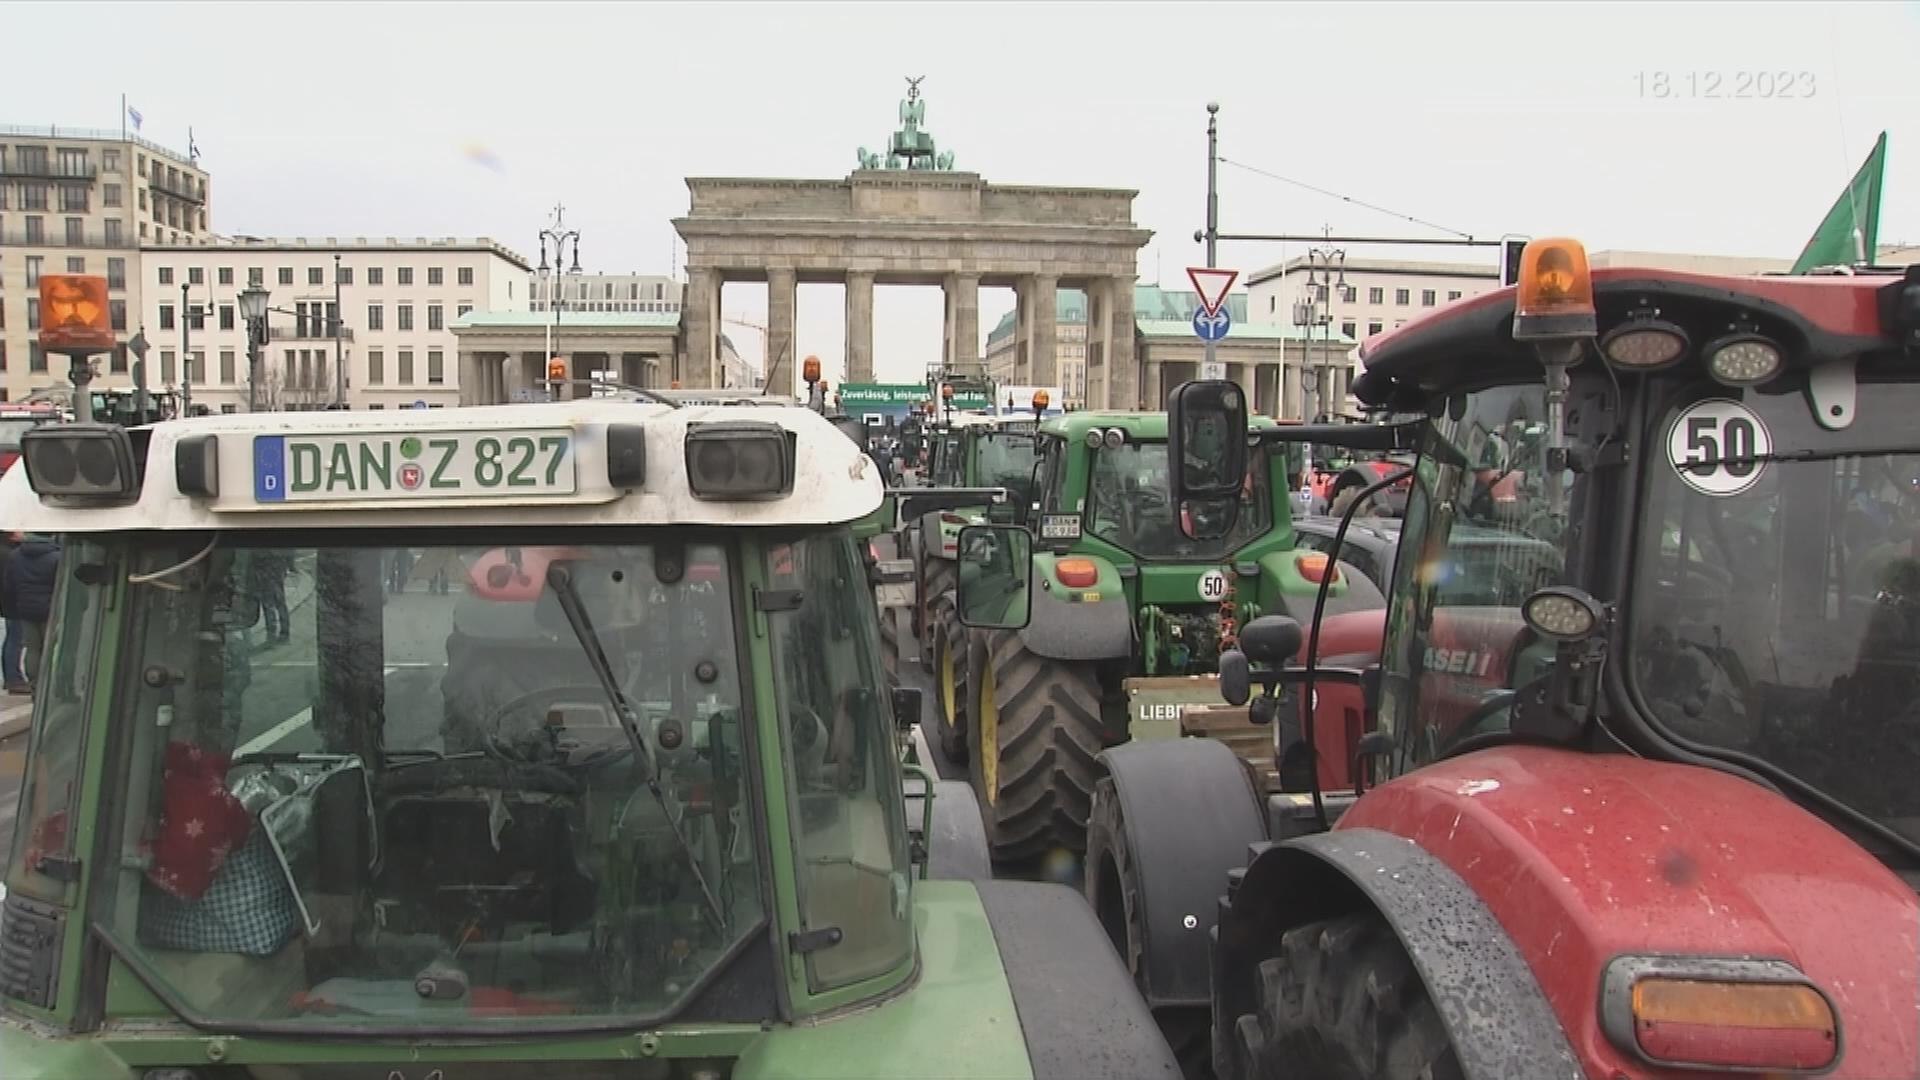 Auf dem Bild sieht man Traktoren vor dem Brandenburger Tor.